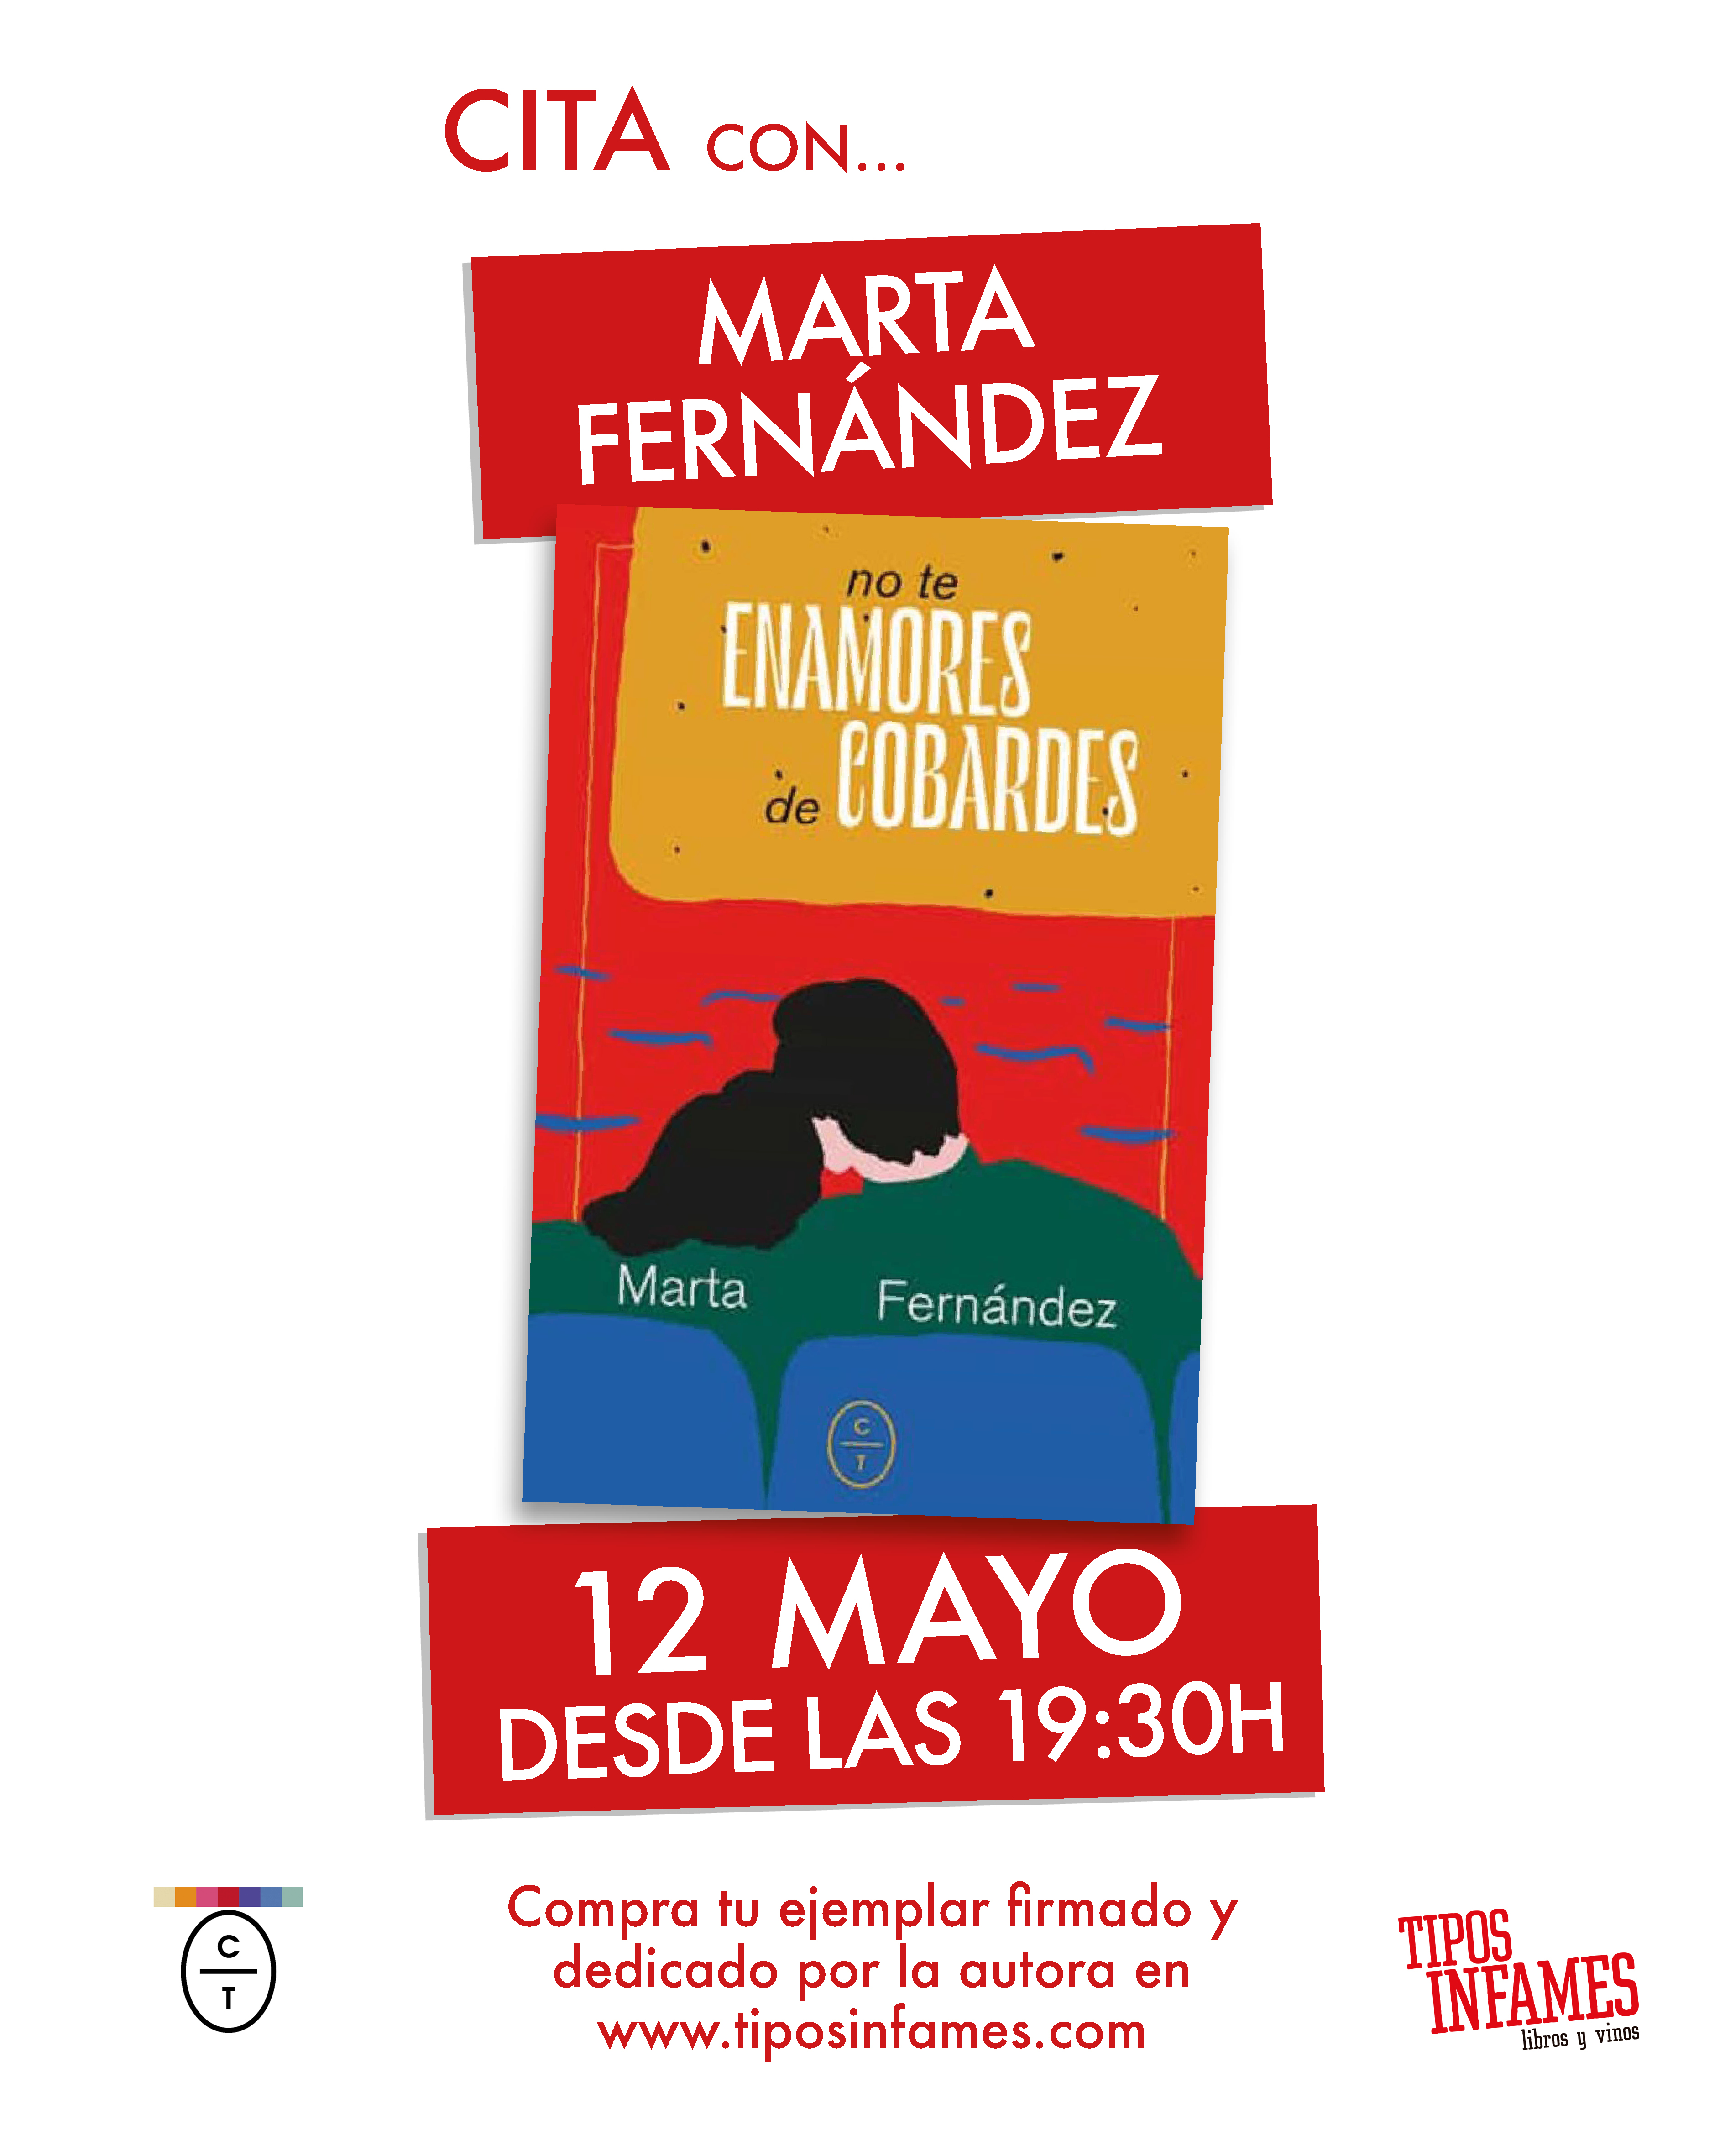 Cita con... Marta Fernández